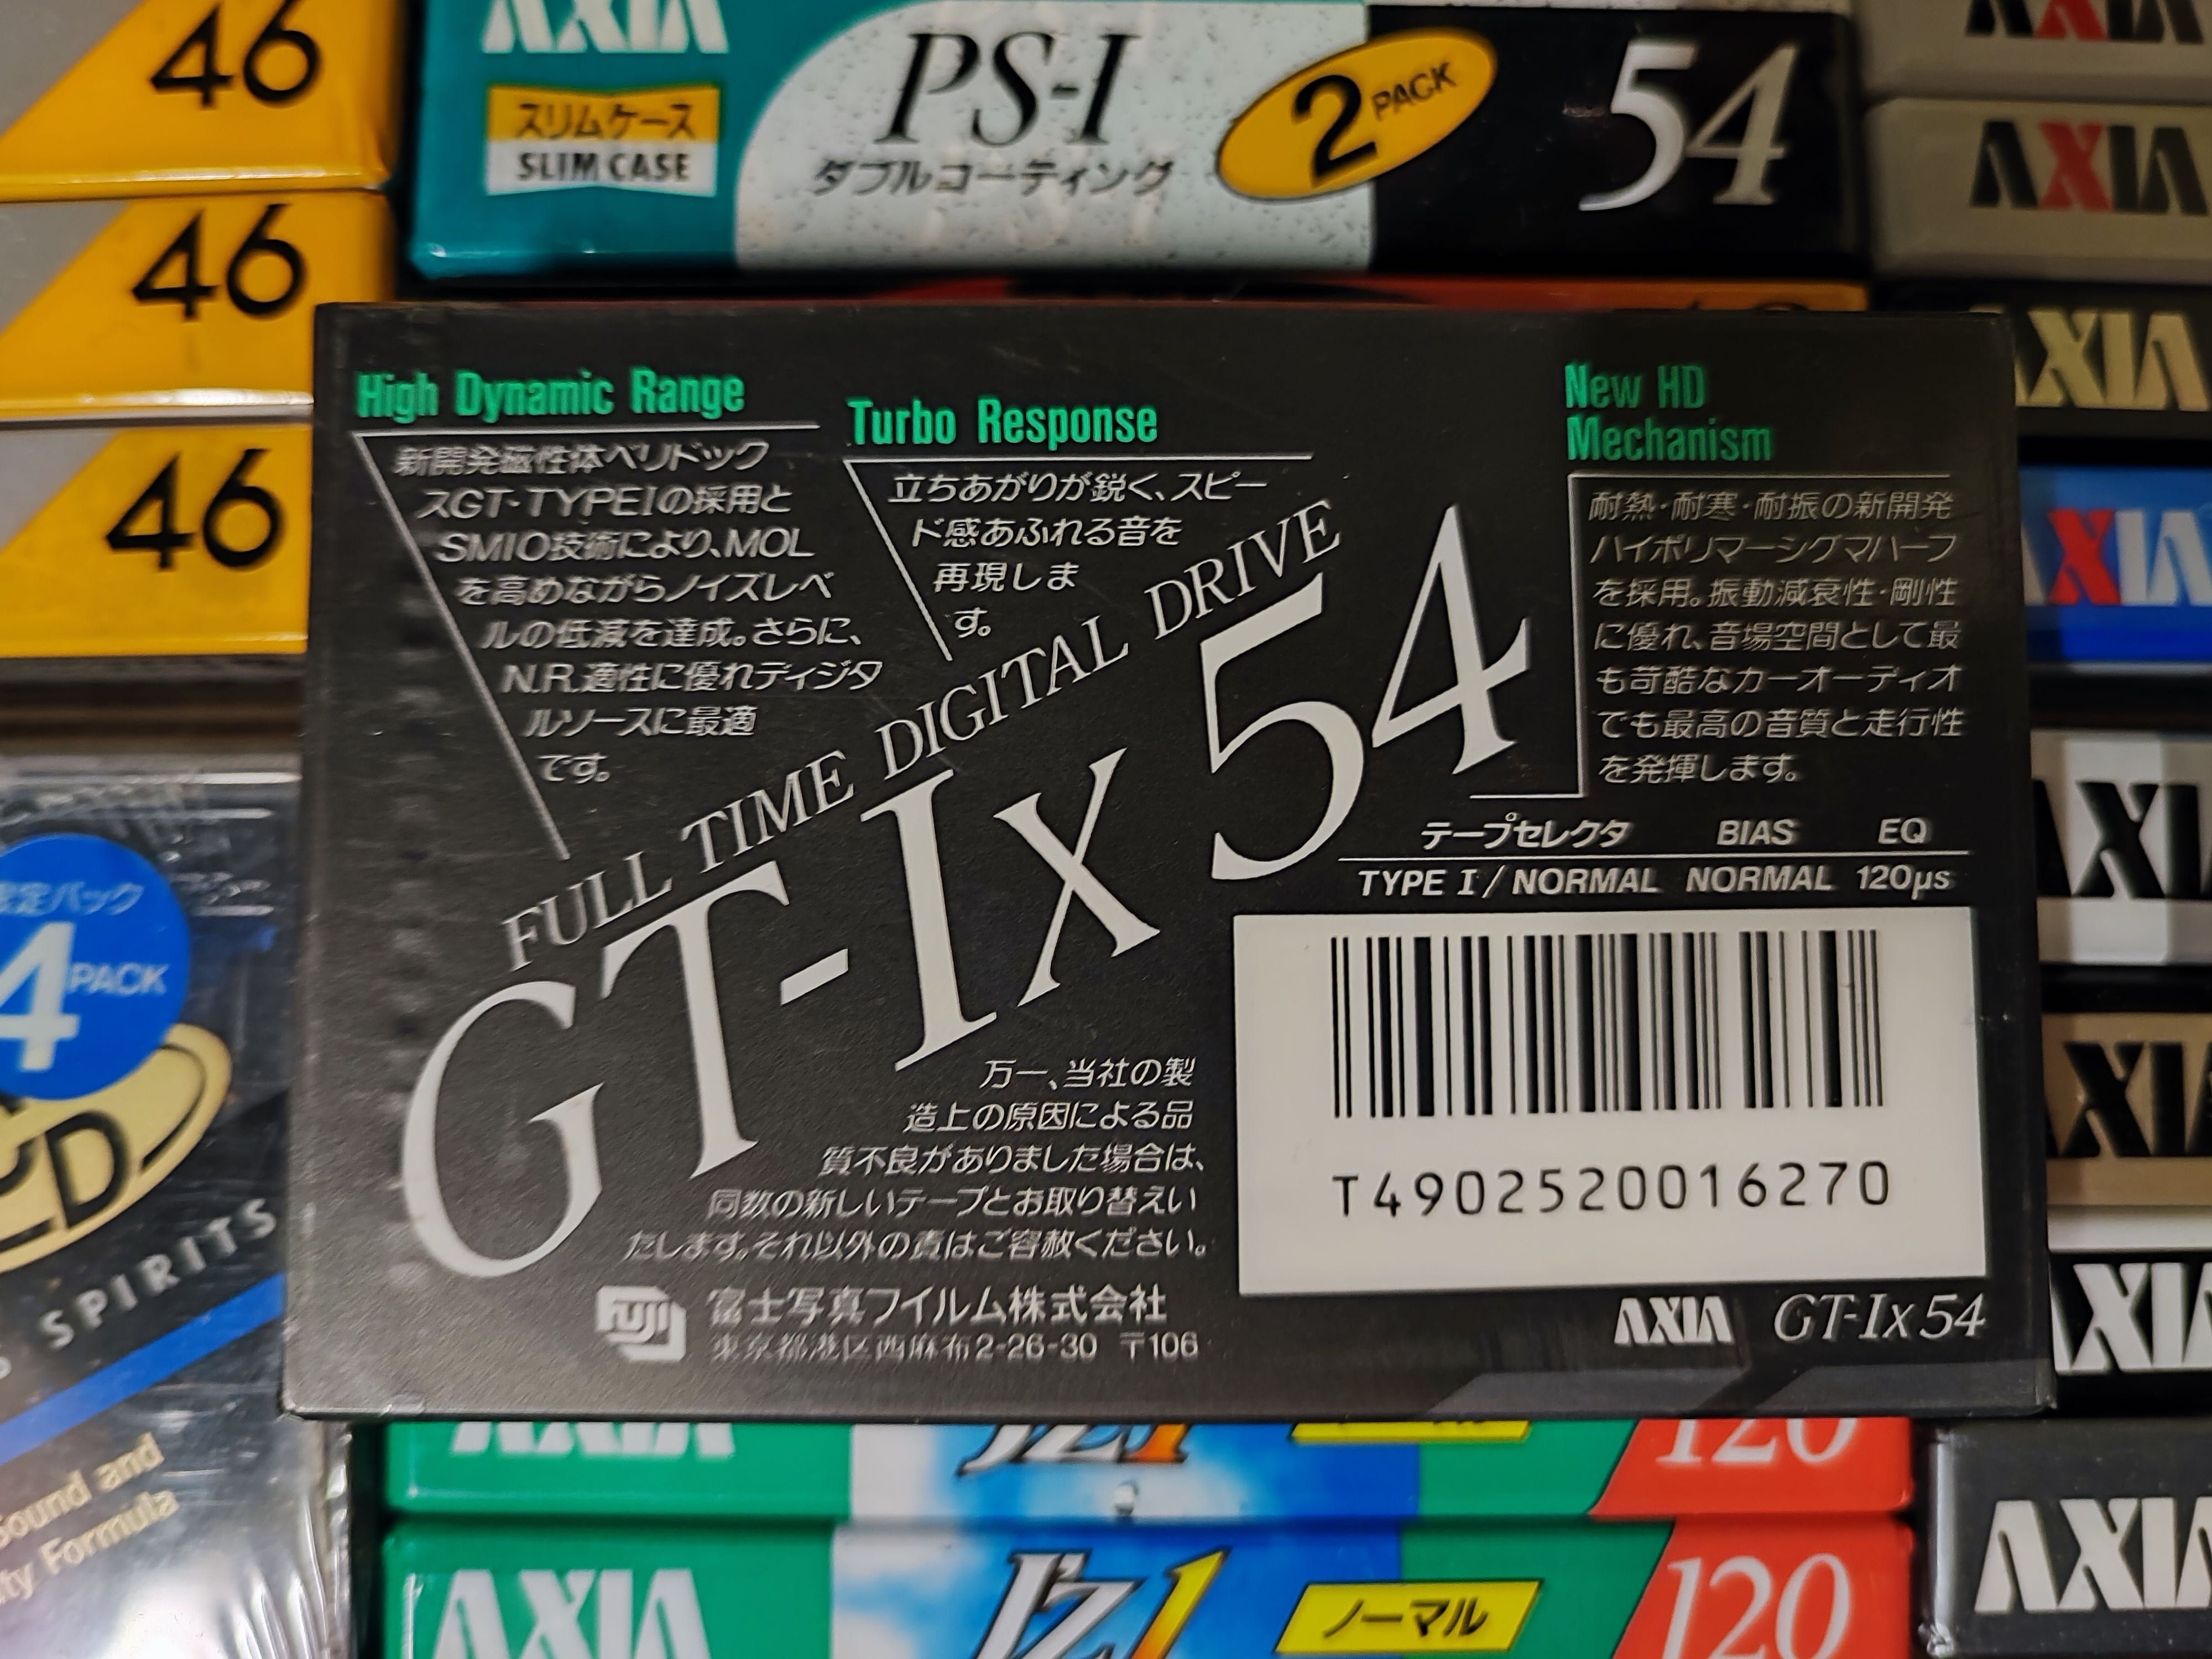 Cassette AXIA (FUJI) GT-IX C54